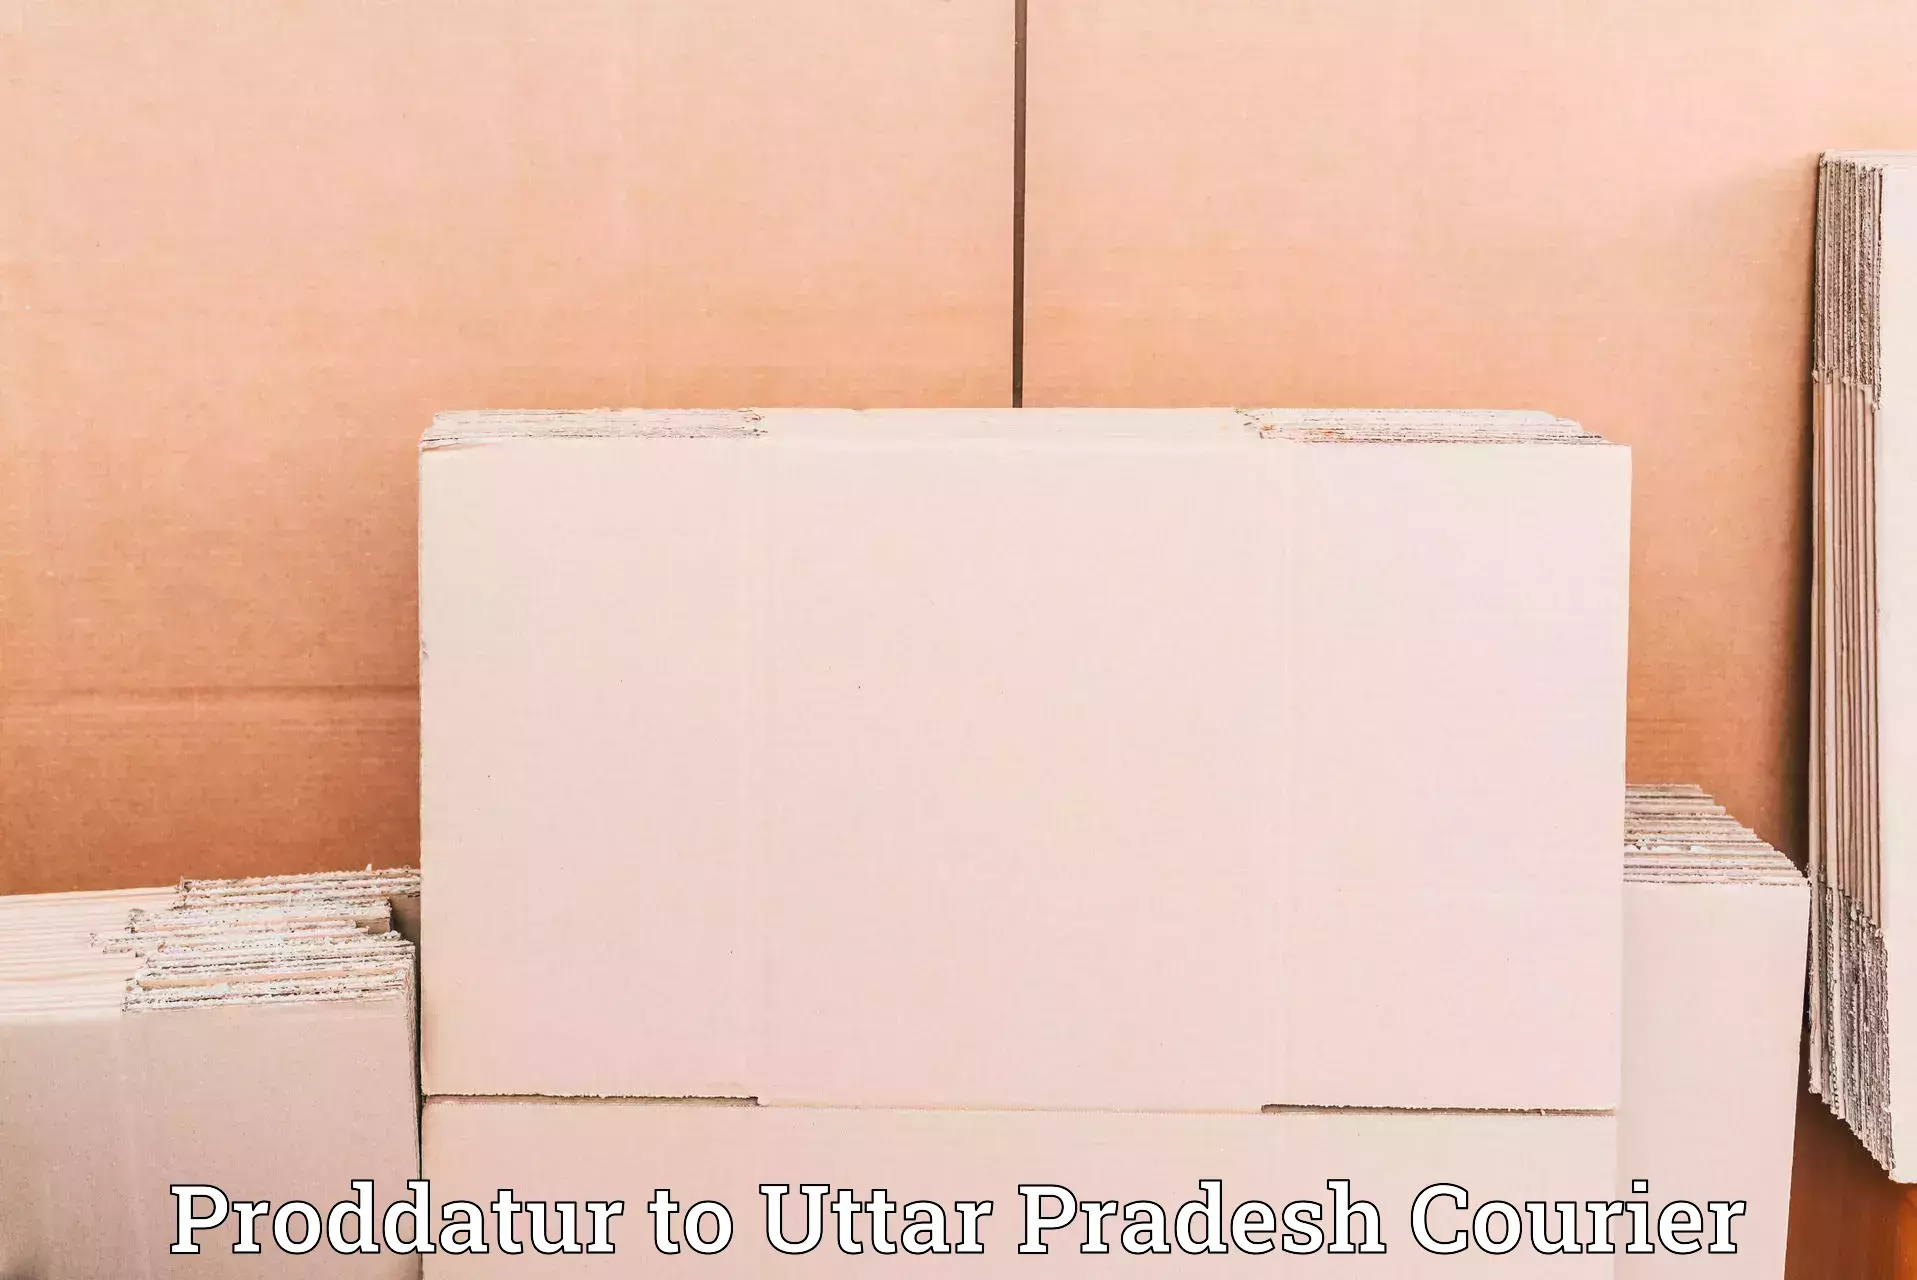 Customer-friendly courier services Proddatur to Uttar Pradesh